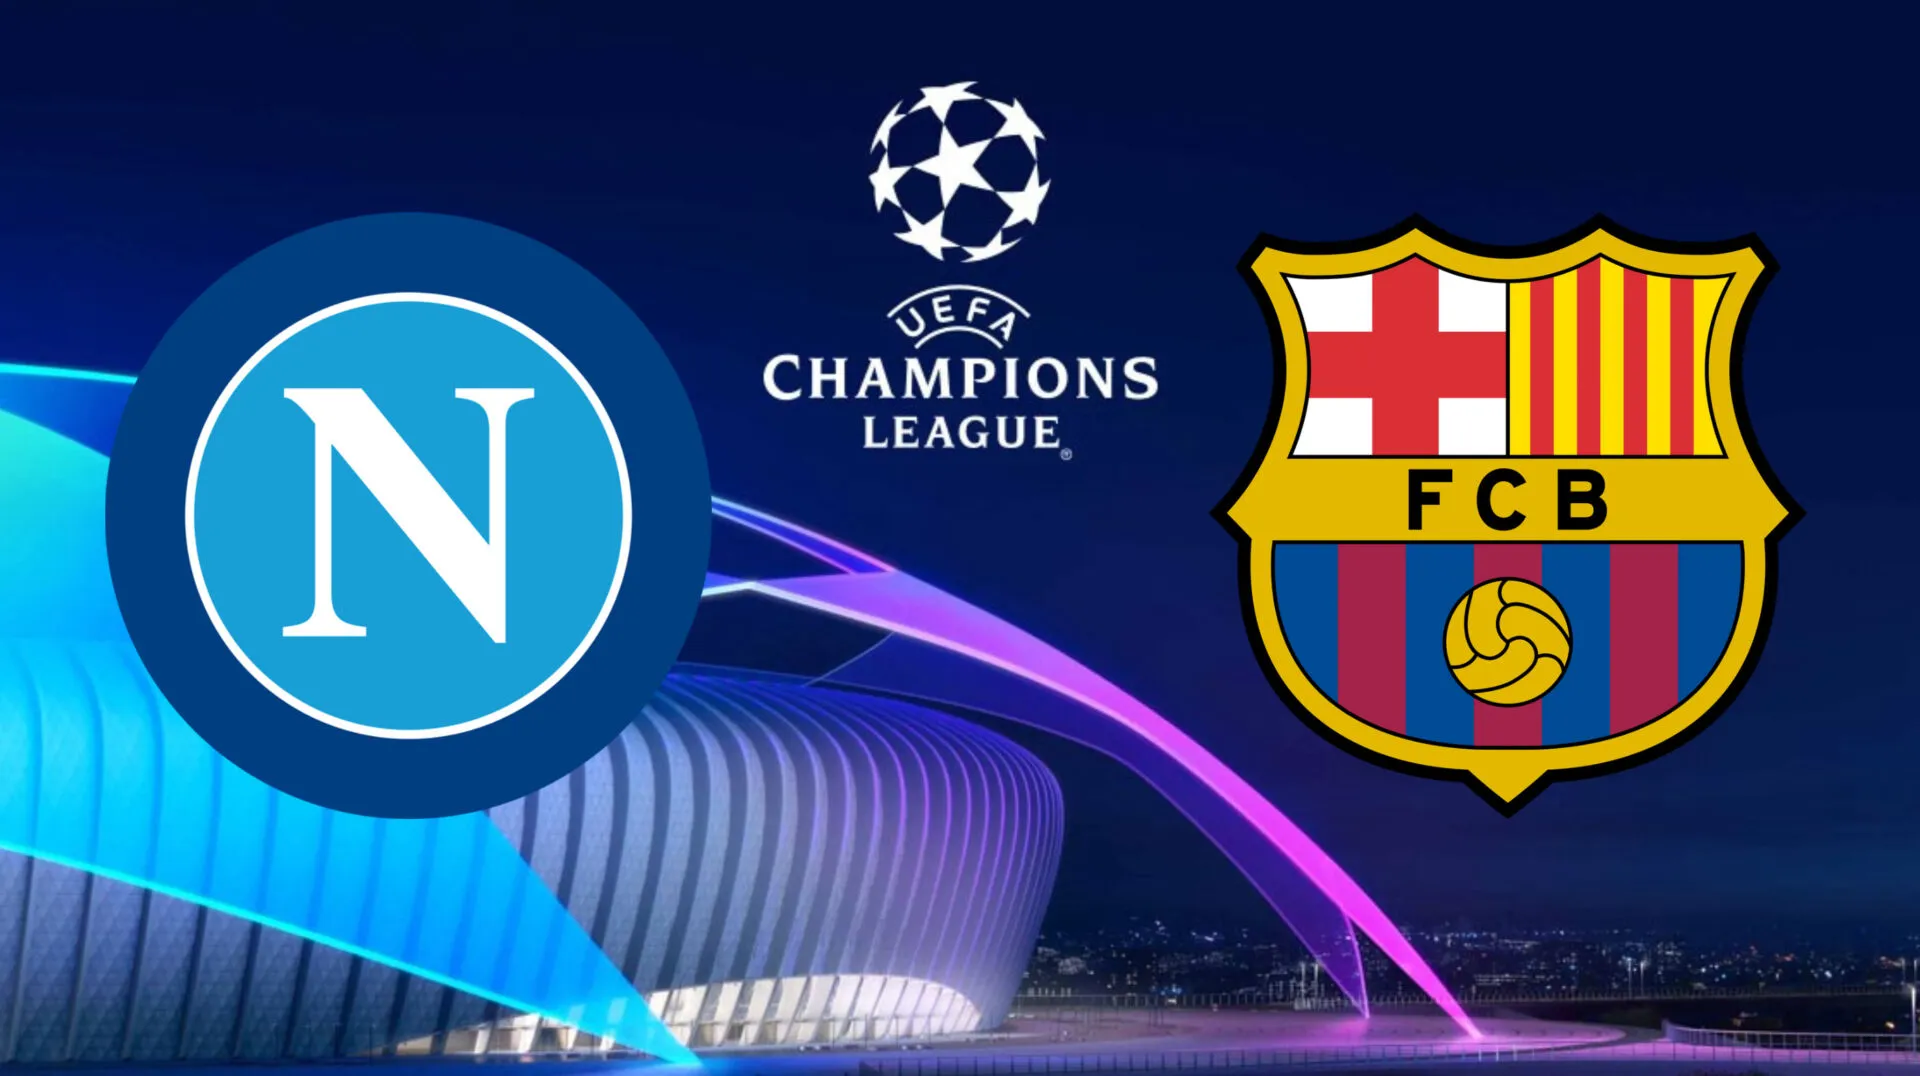 Napoli-Barcellona, alle 21 torna la Champions League: ecco come vederla in streaming gratis e le probabili formazioni